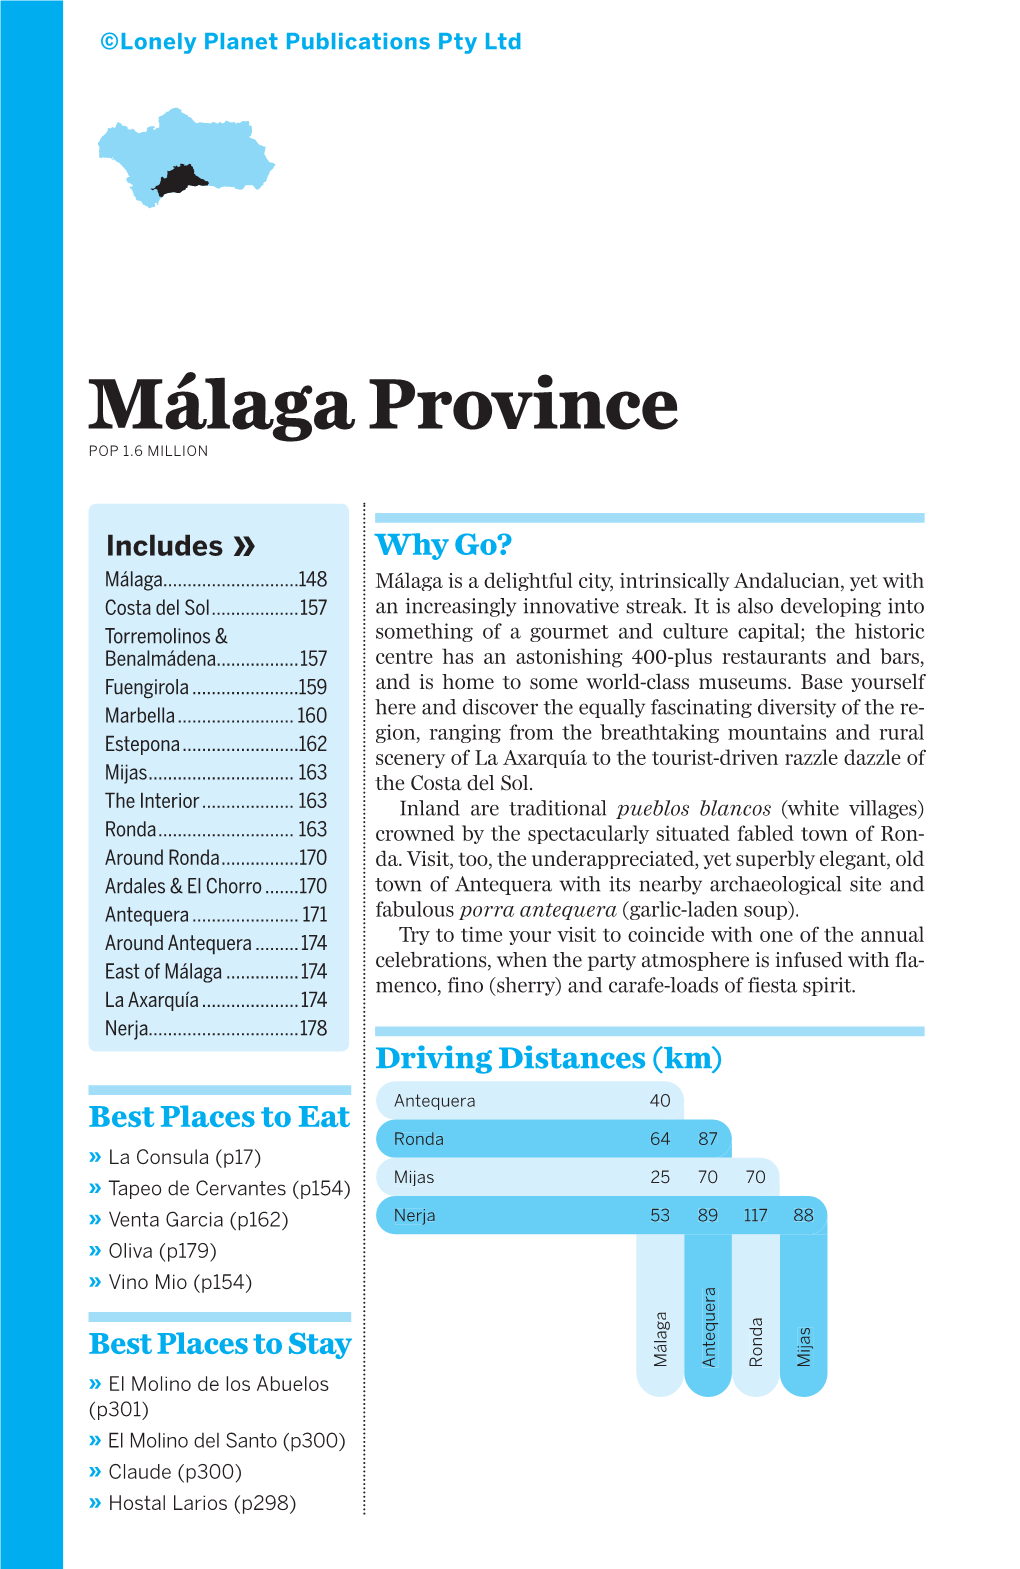 Malaga Province